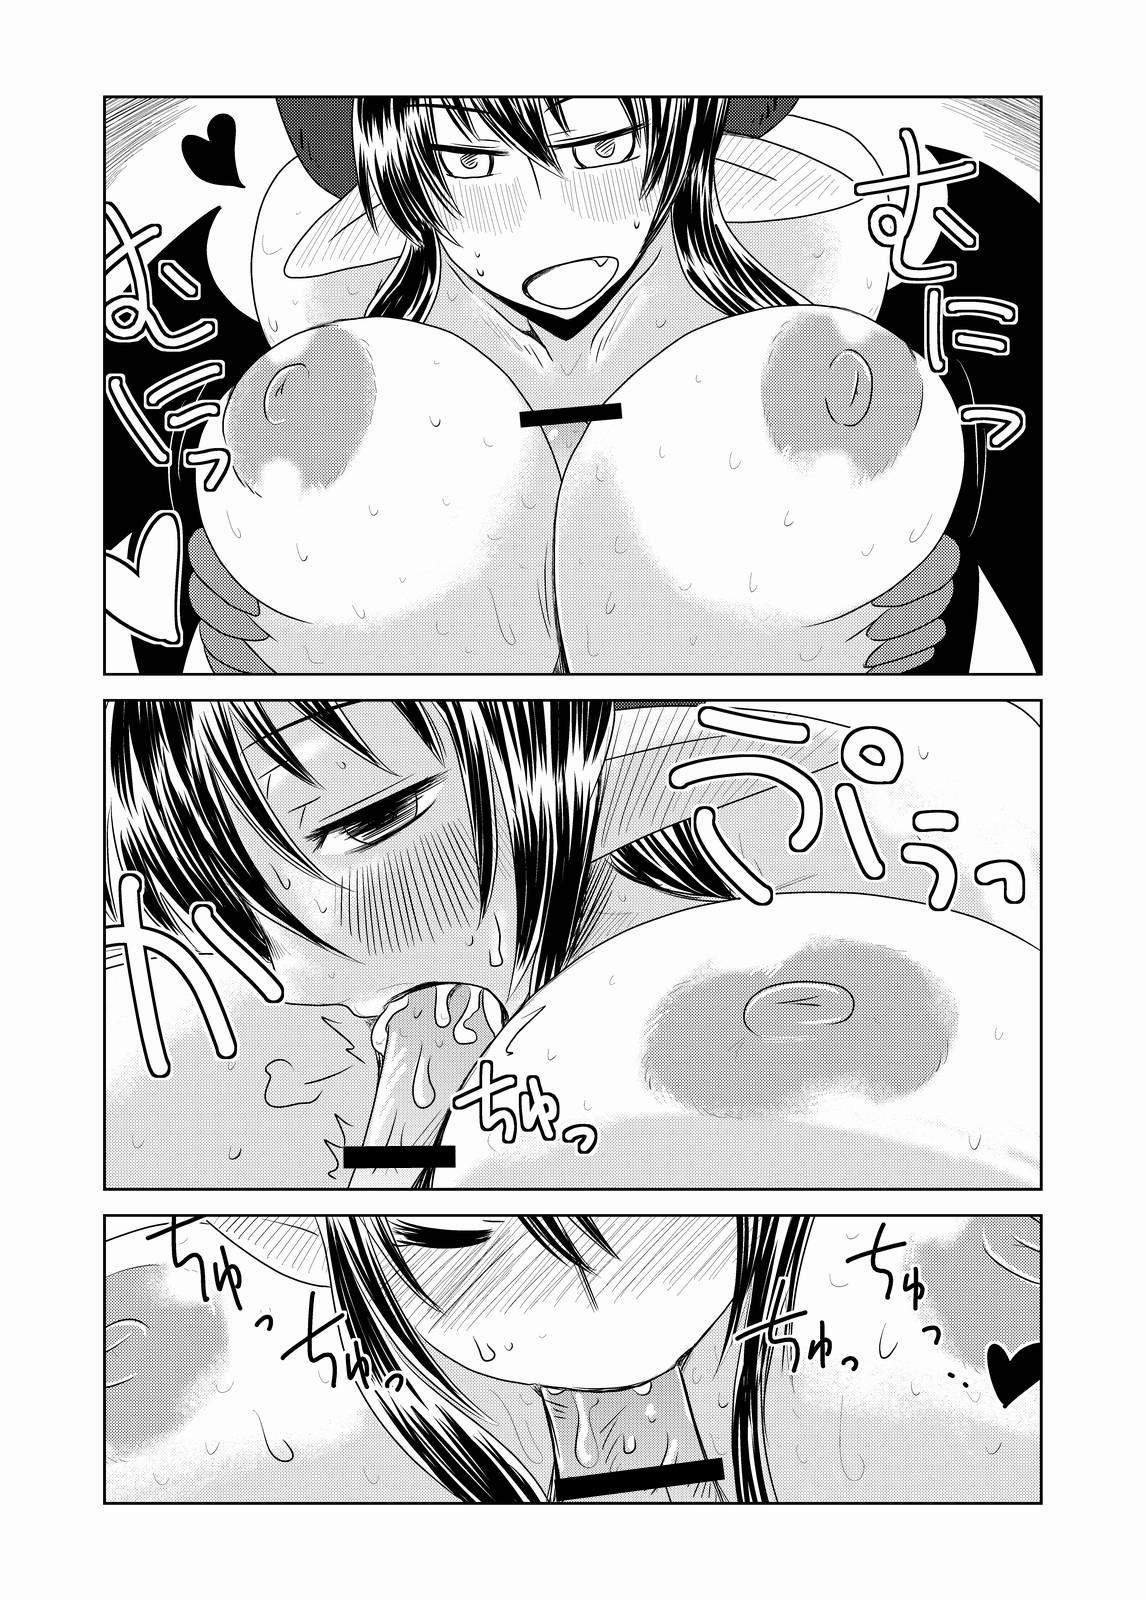 Rebolando Succubus musume no Hatsukoi. Adolescente - Page 9